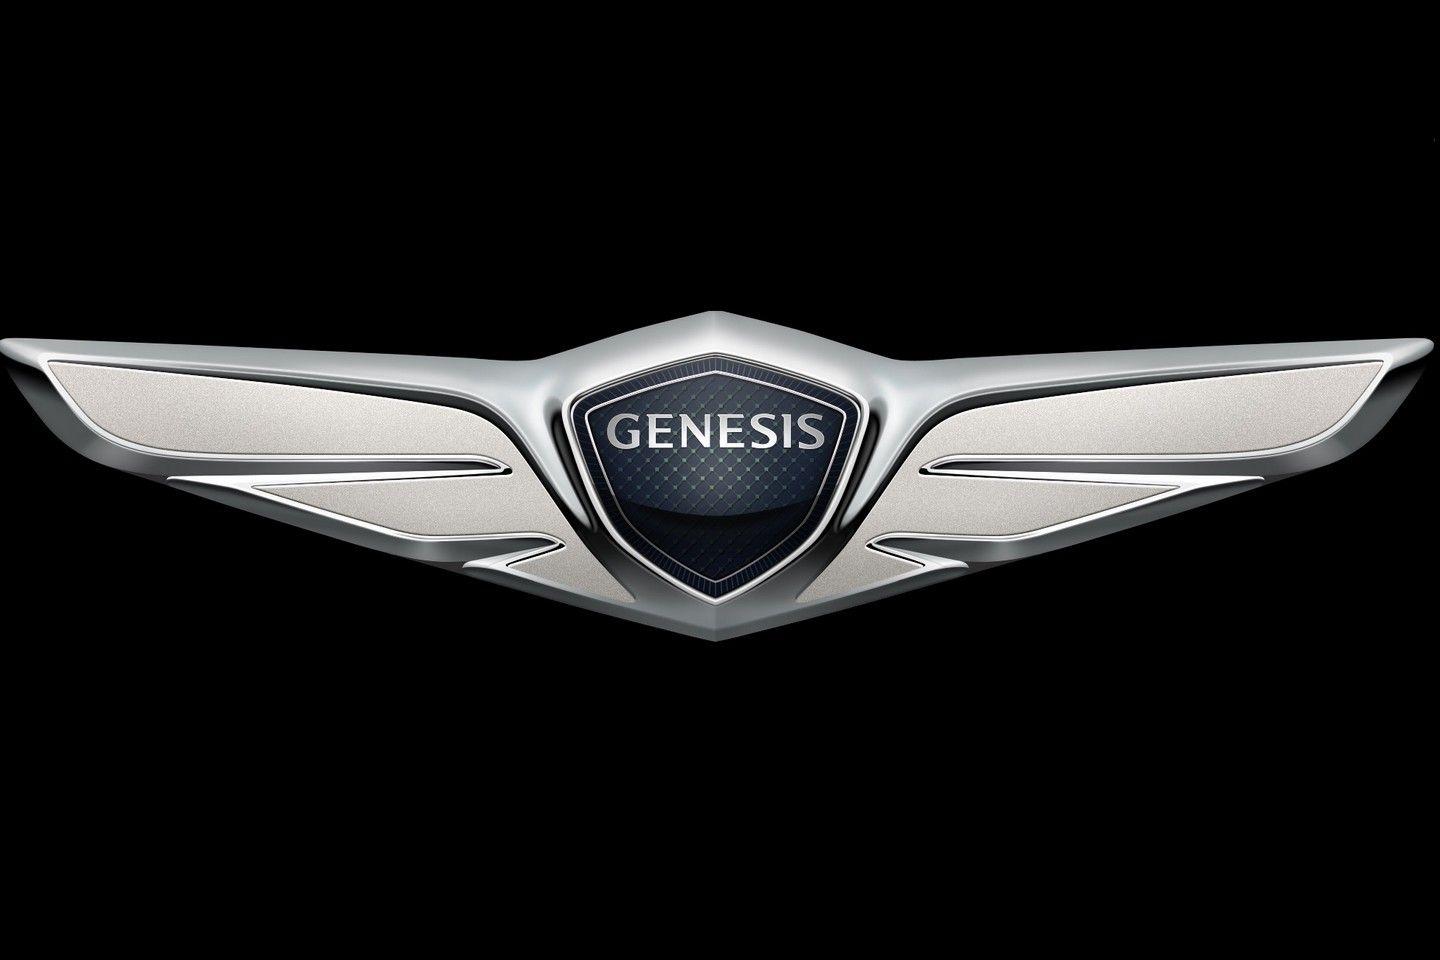 Hyundai Genesis Logo - Hyundai Genesis luxury brand logo